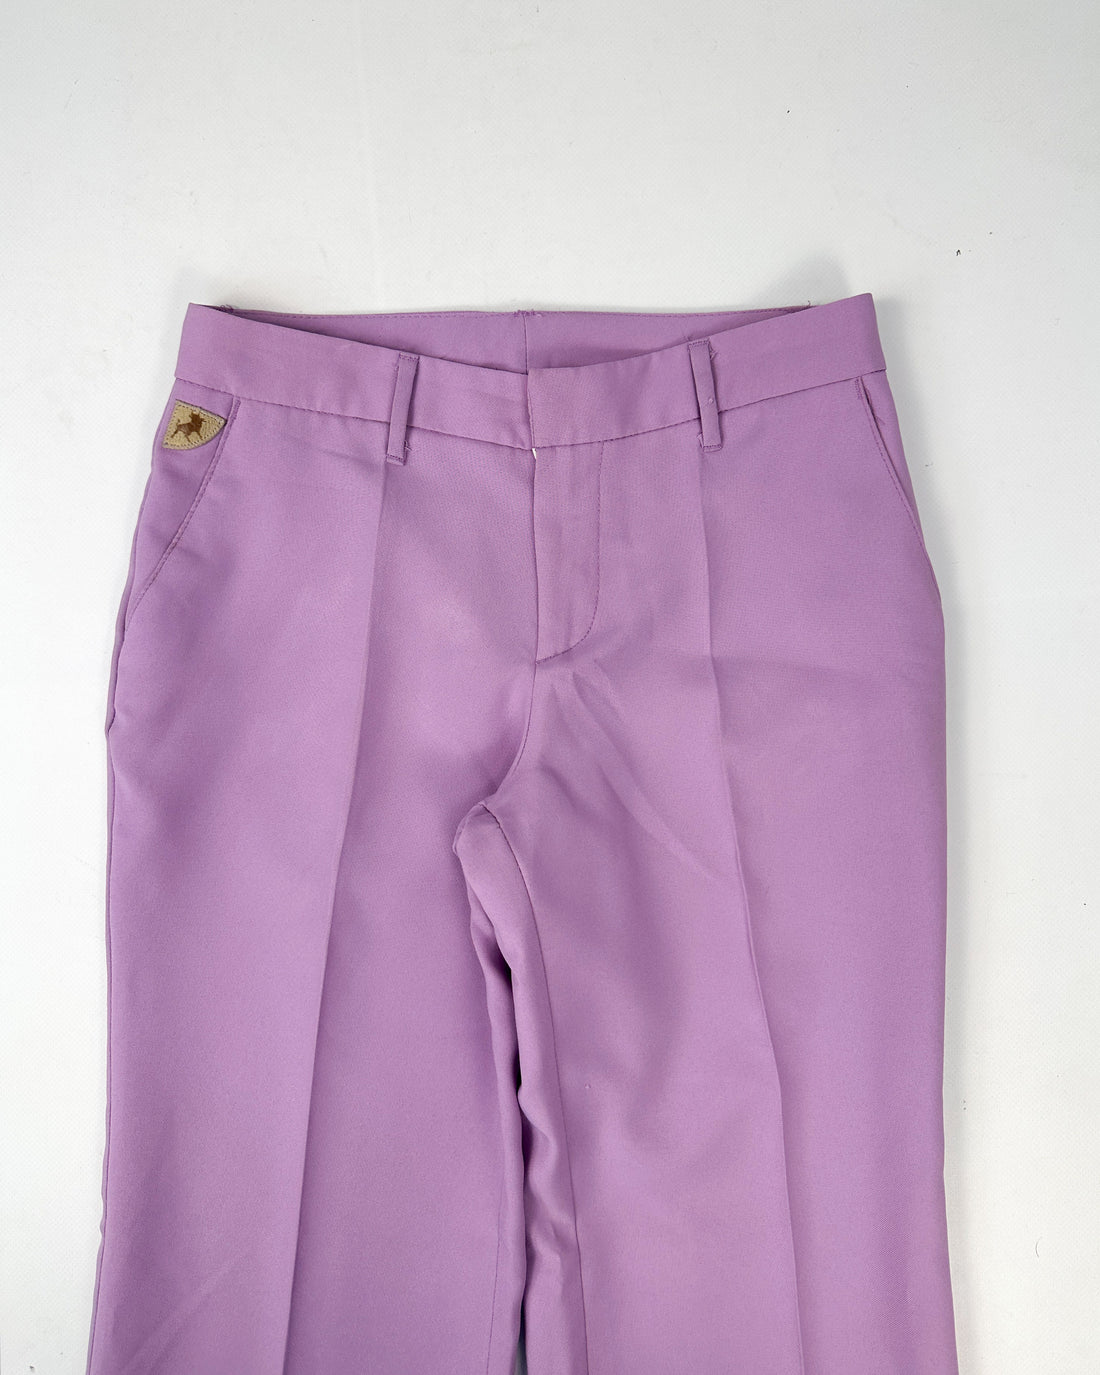 Lois Lavender Suit Flare Pants 1990's